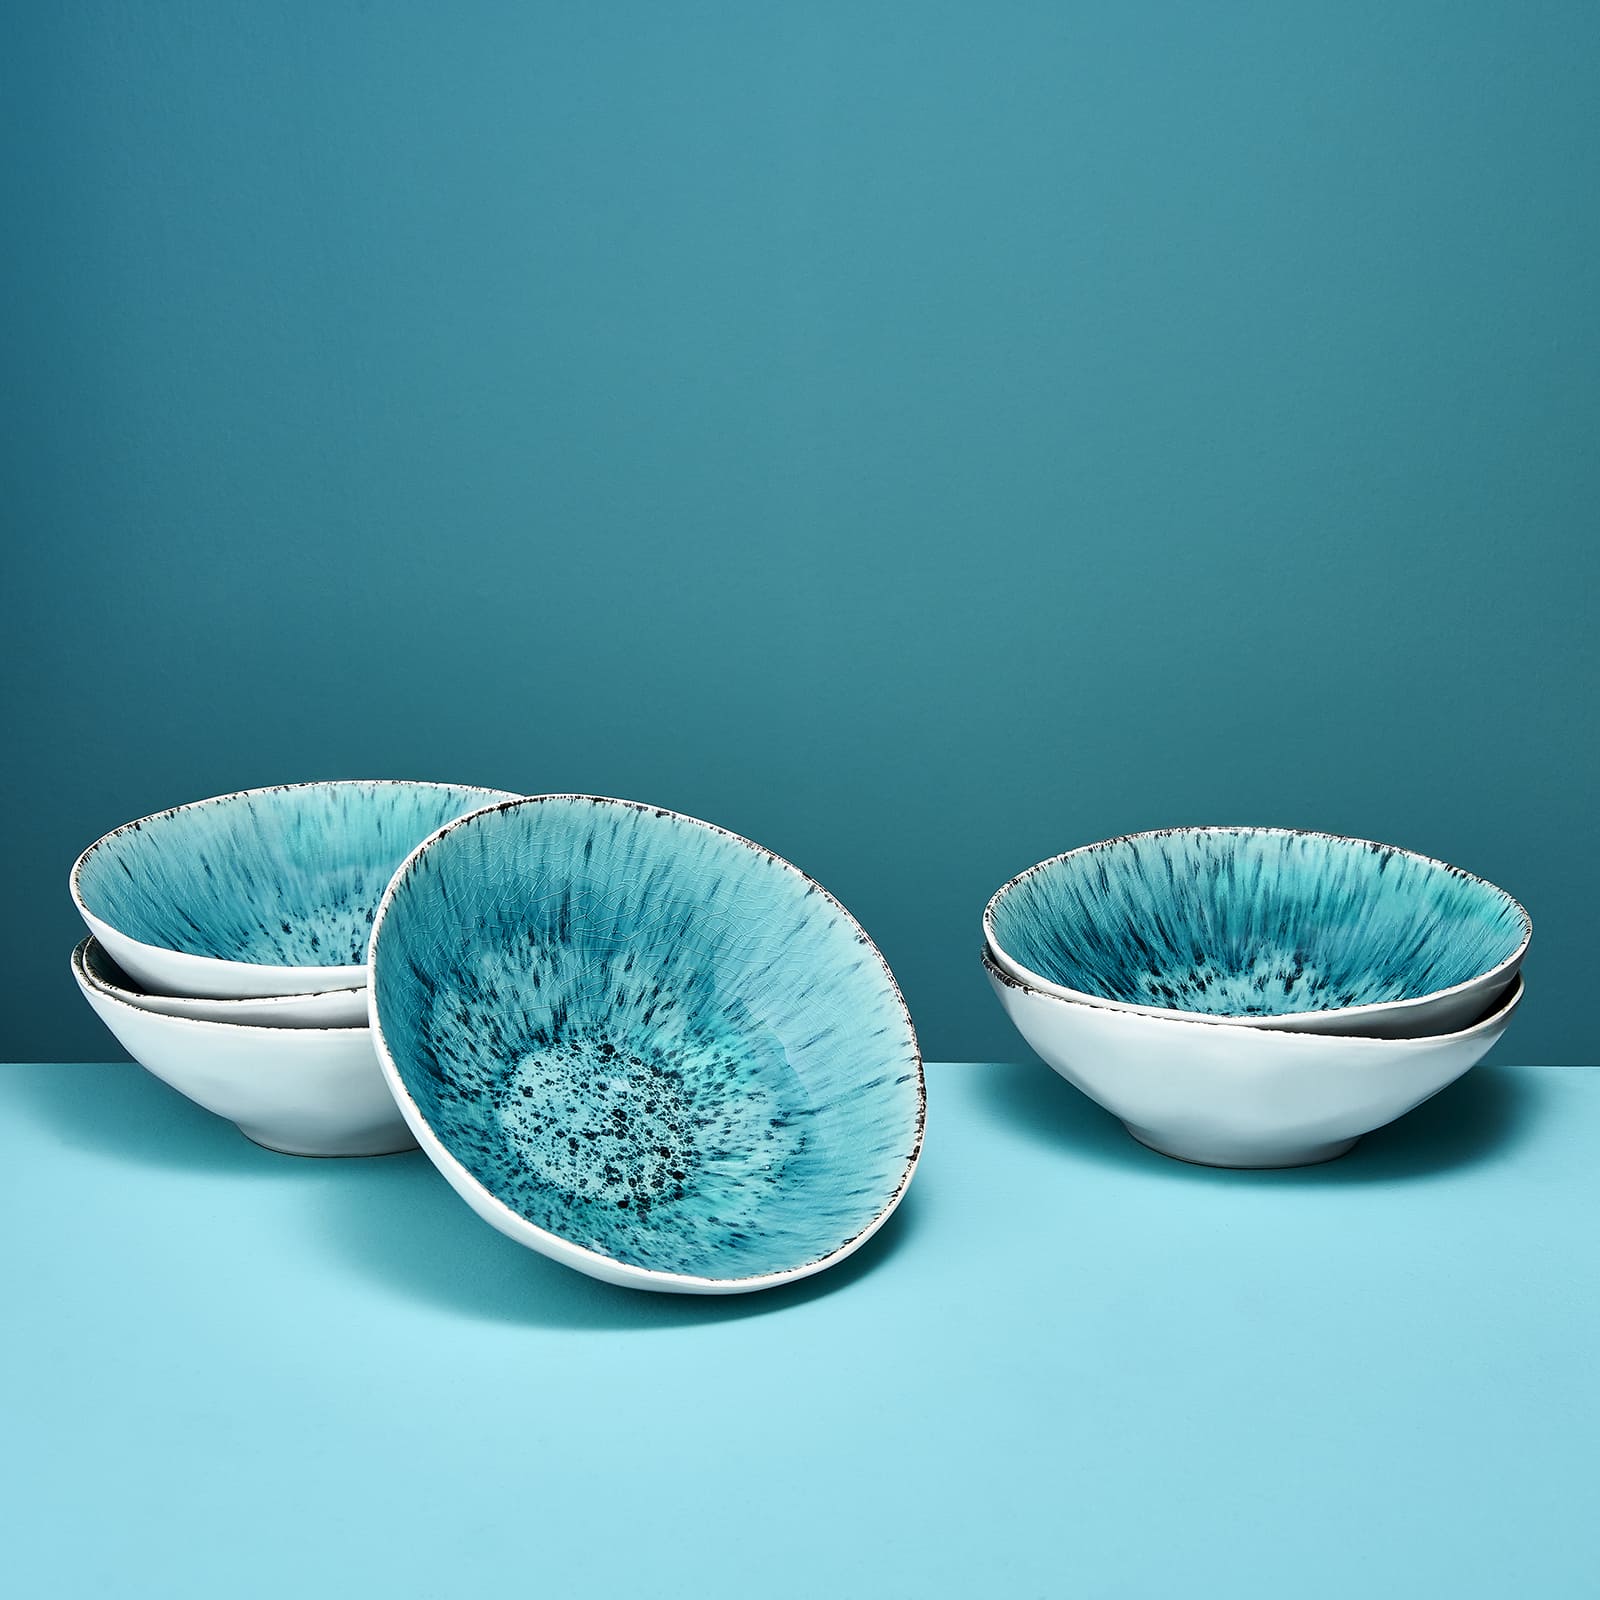 Set of 6 soup plates Aquamarin, white/turquoise, stoneware, 19.5x6.5 cm